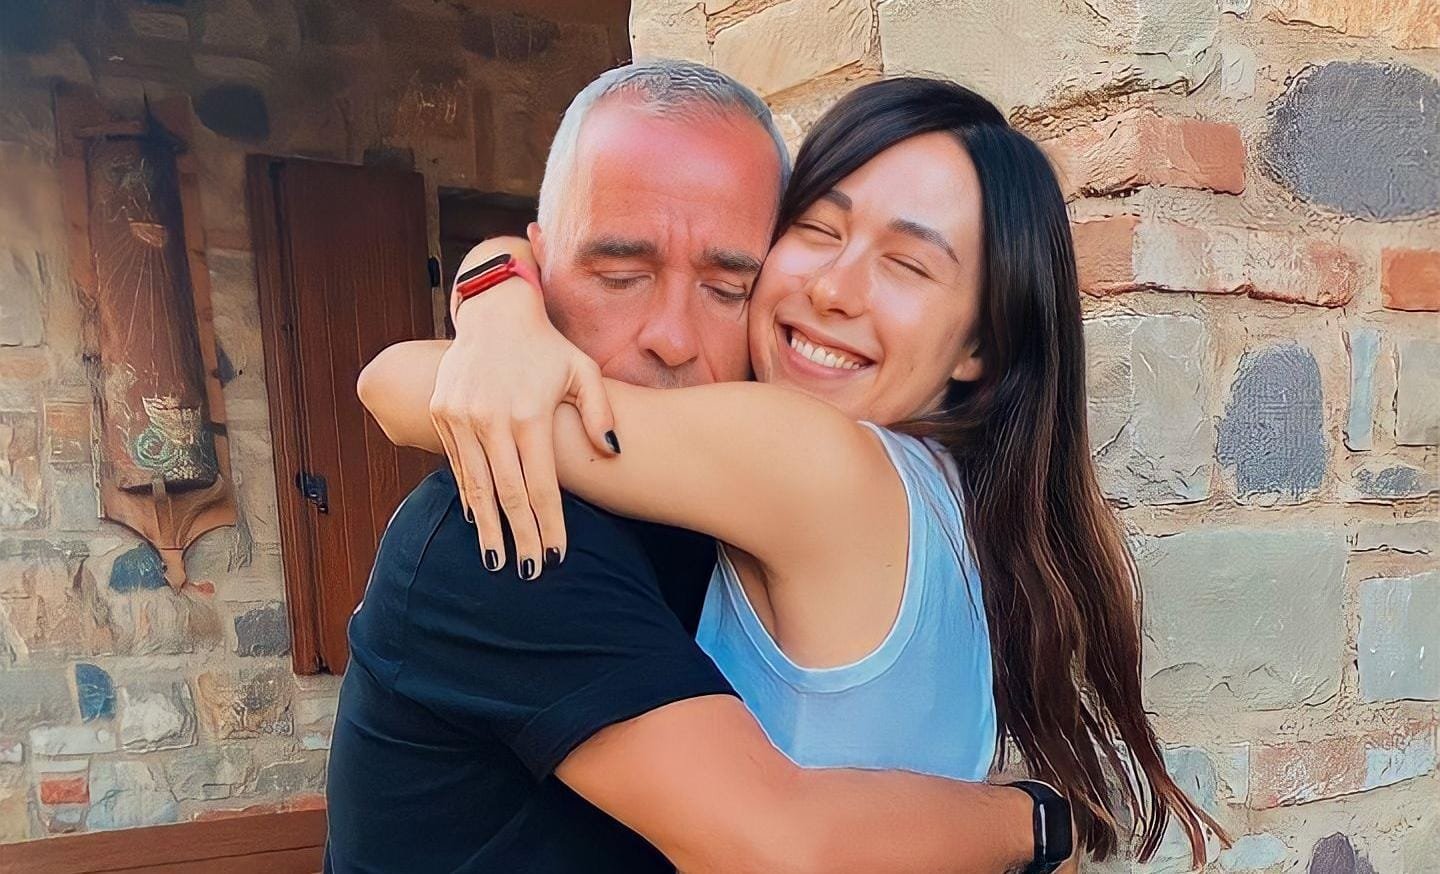 Aurora Ramazzotti scrive una lettera a papà Eros in occasione dei suoi 60 anni: “Vorrei proteggerti dal dolore che hai provato”